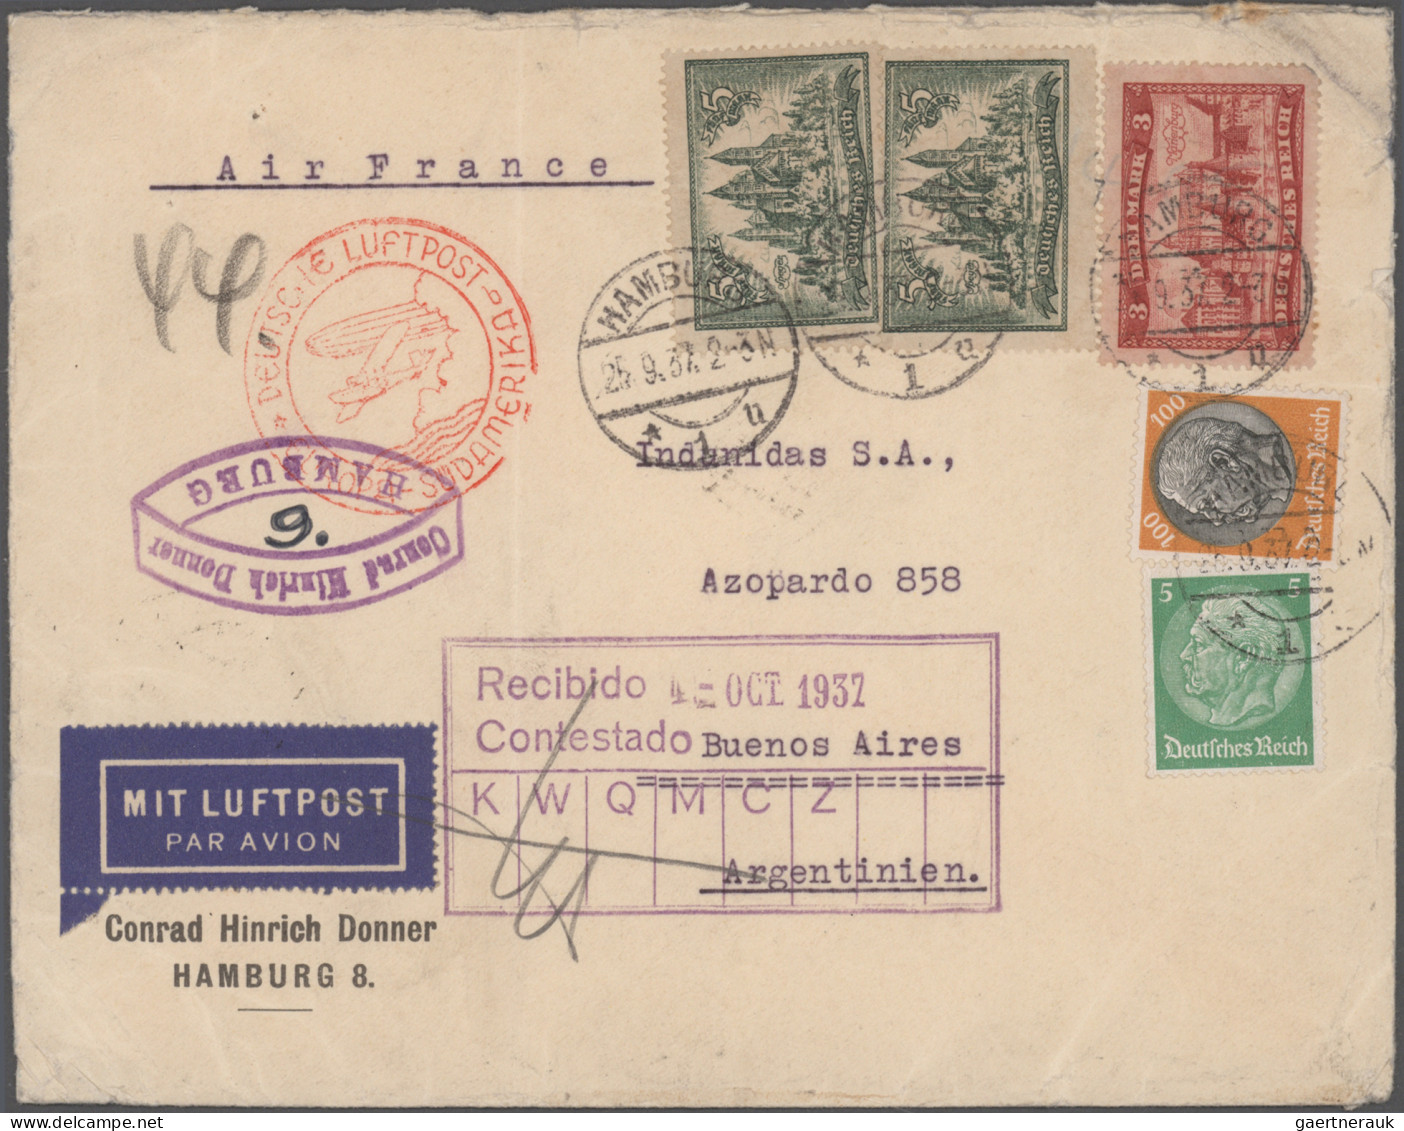 Deutsches Reich: 1933/1943, Destination ARGENTINIEN, außergewöhnliche Sammlung v